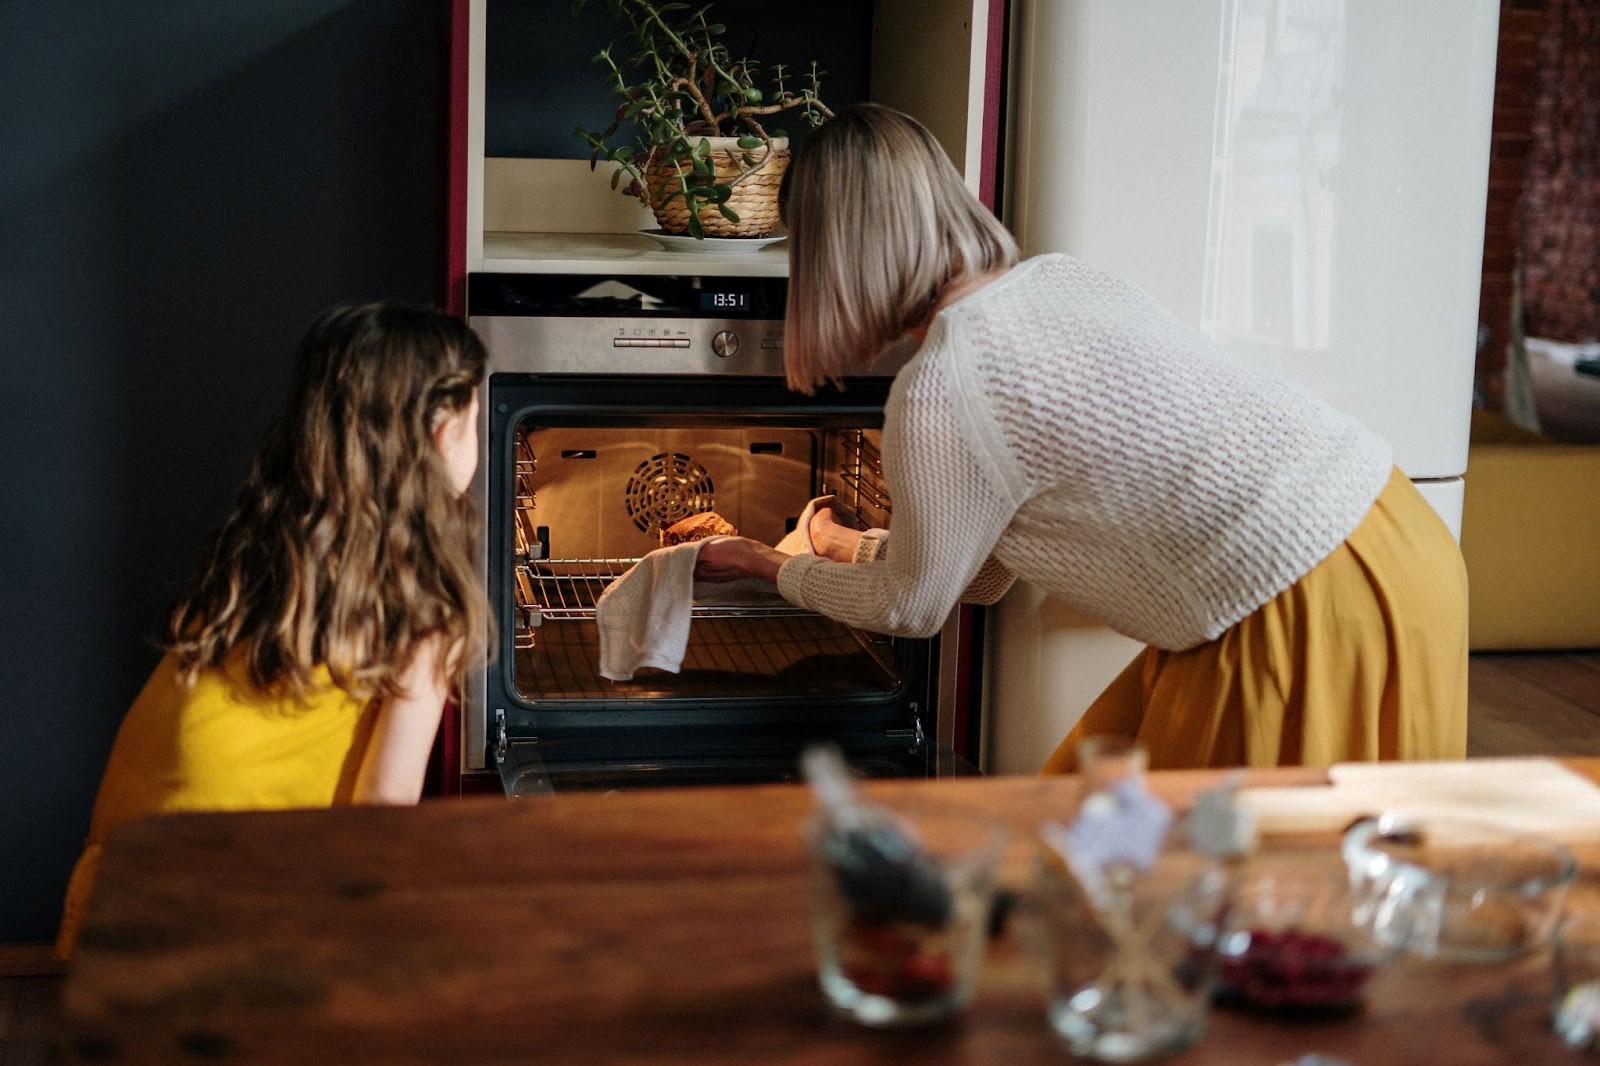 Vrouw stopt eten in een voorverwarmde oven | Welhof NL